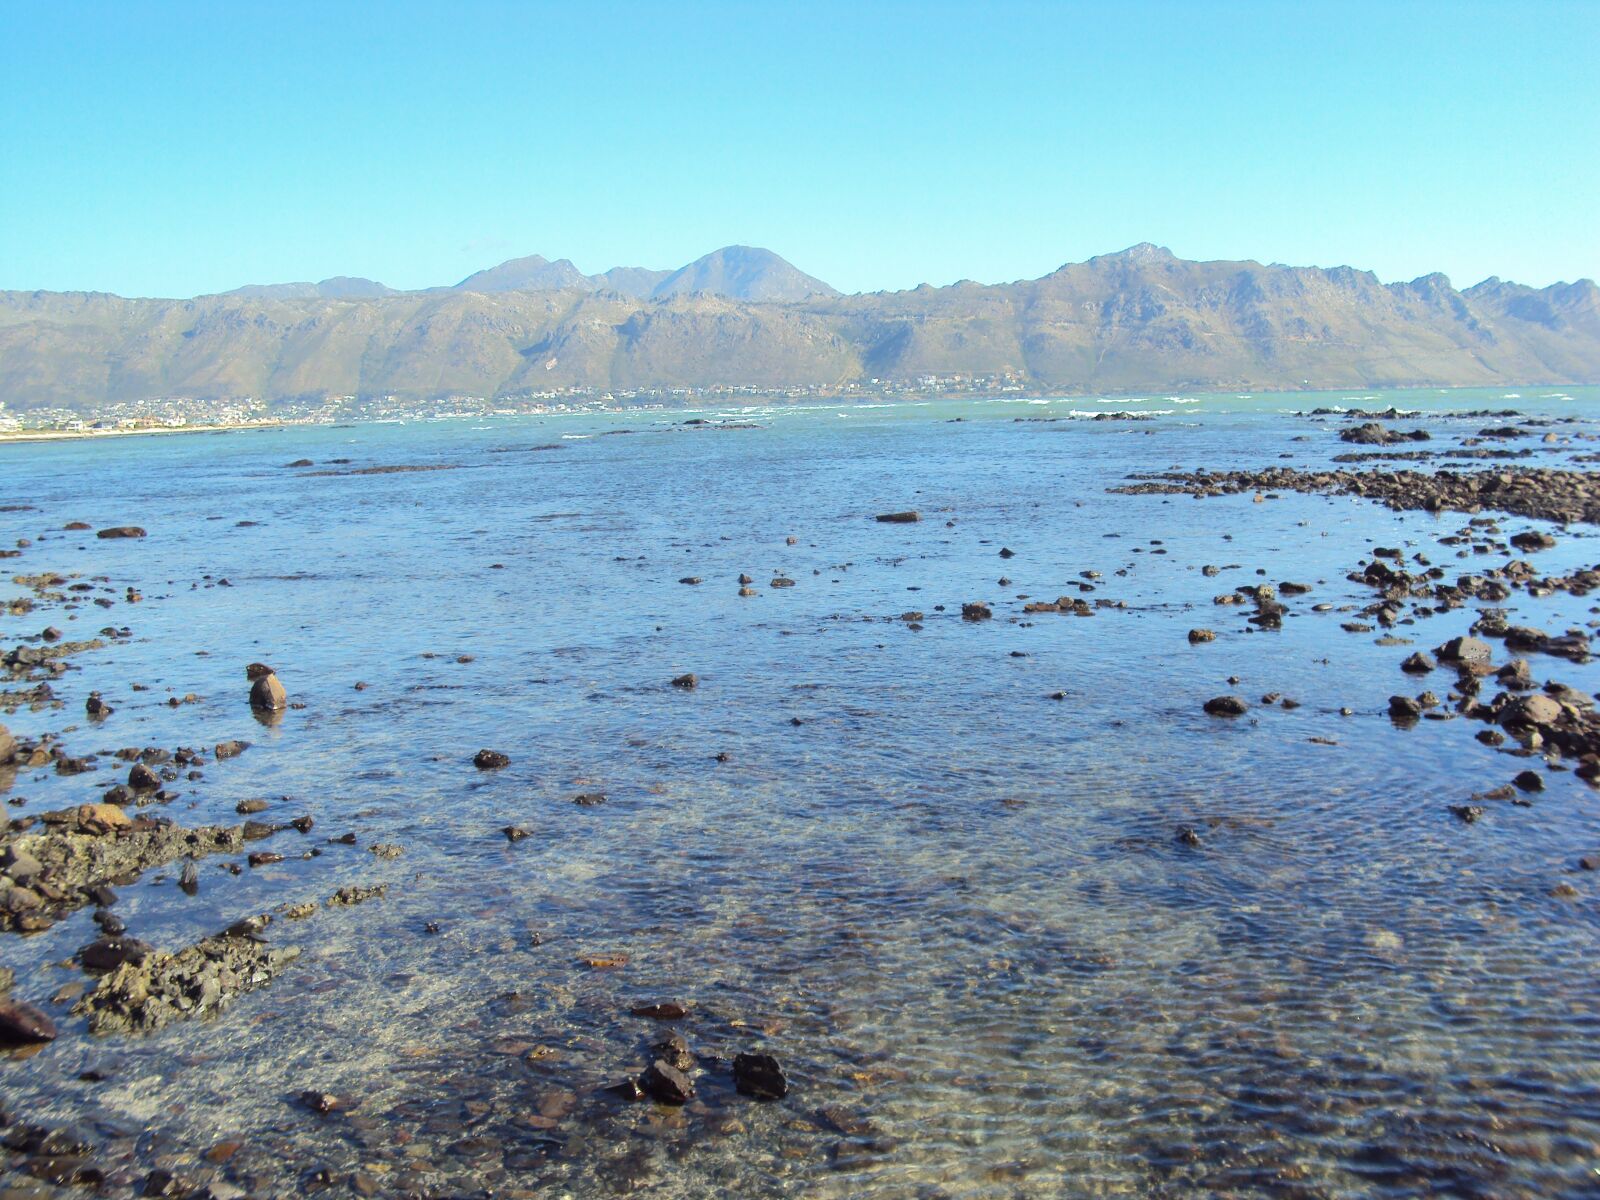 Sony DSC-W180 sample photo. Ocean, landscape, mountain photography